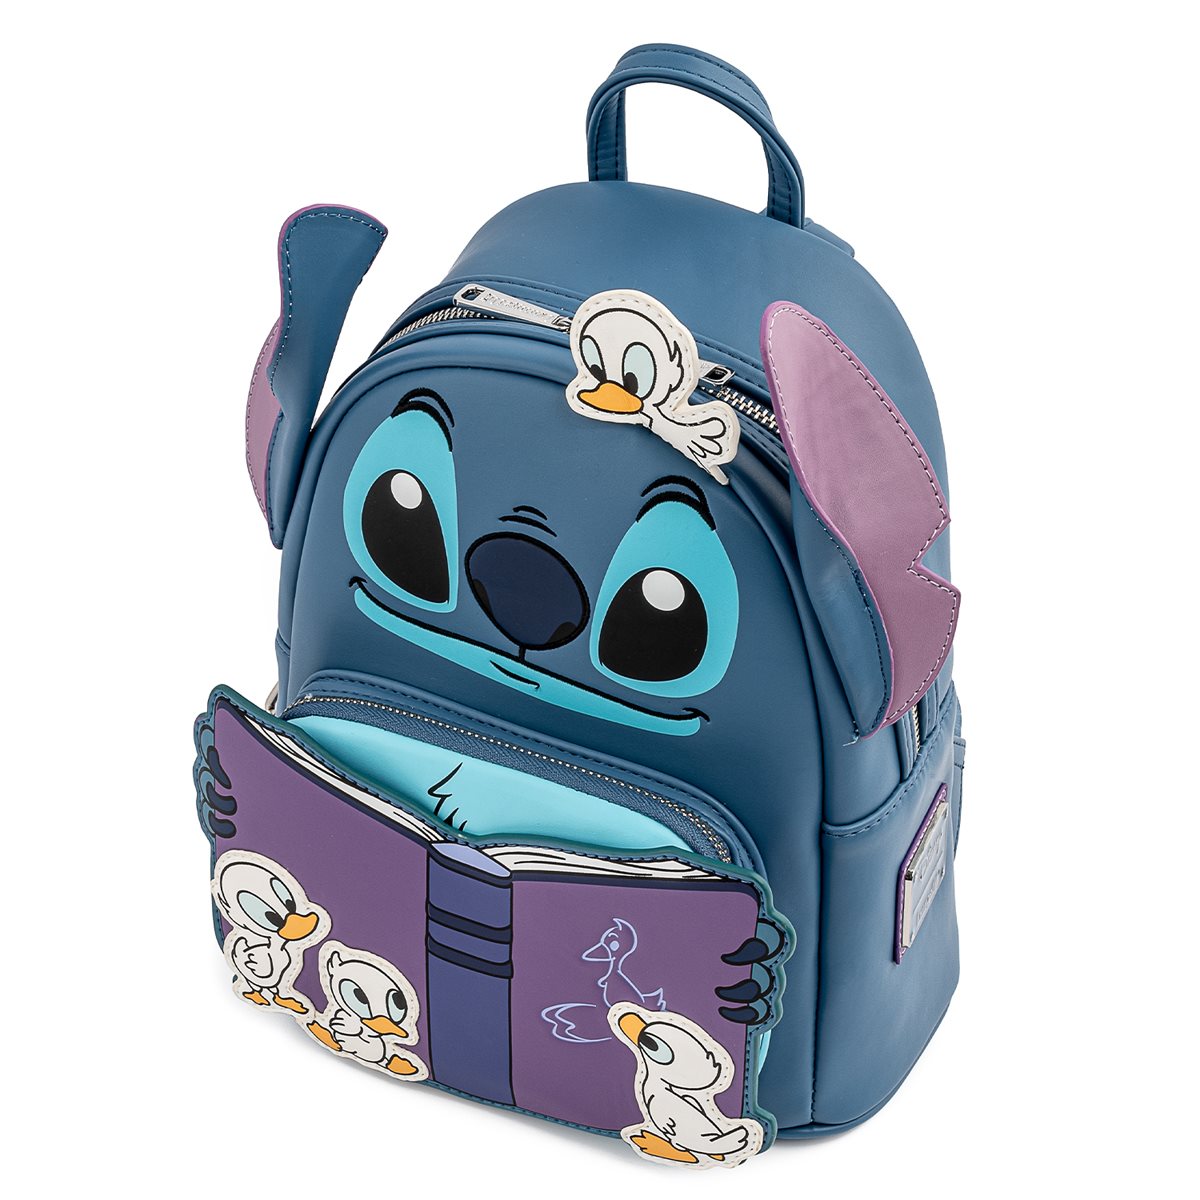 Bolso Stich  Stitch backpack, Cute mini backpacks, Disney bags backpacks